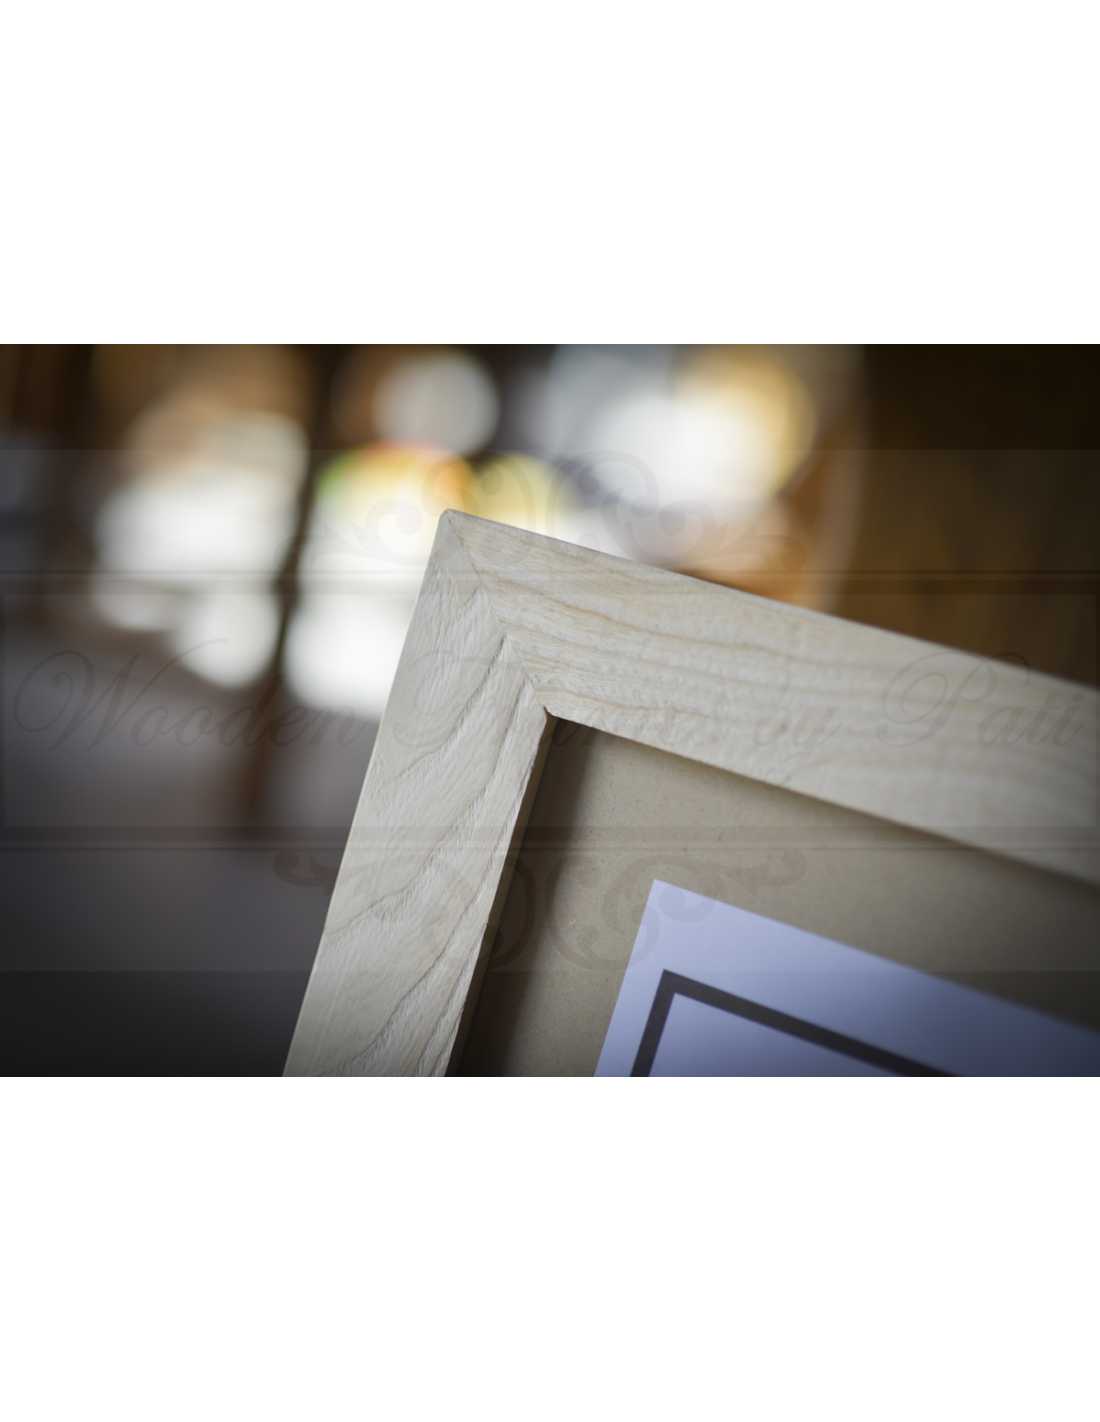 Cadre photo en bois de frêne 40x50, 40x60, 50x50, 60x60, 50x70